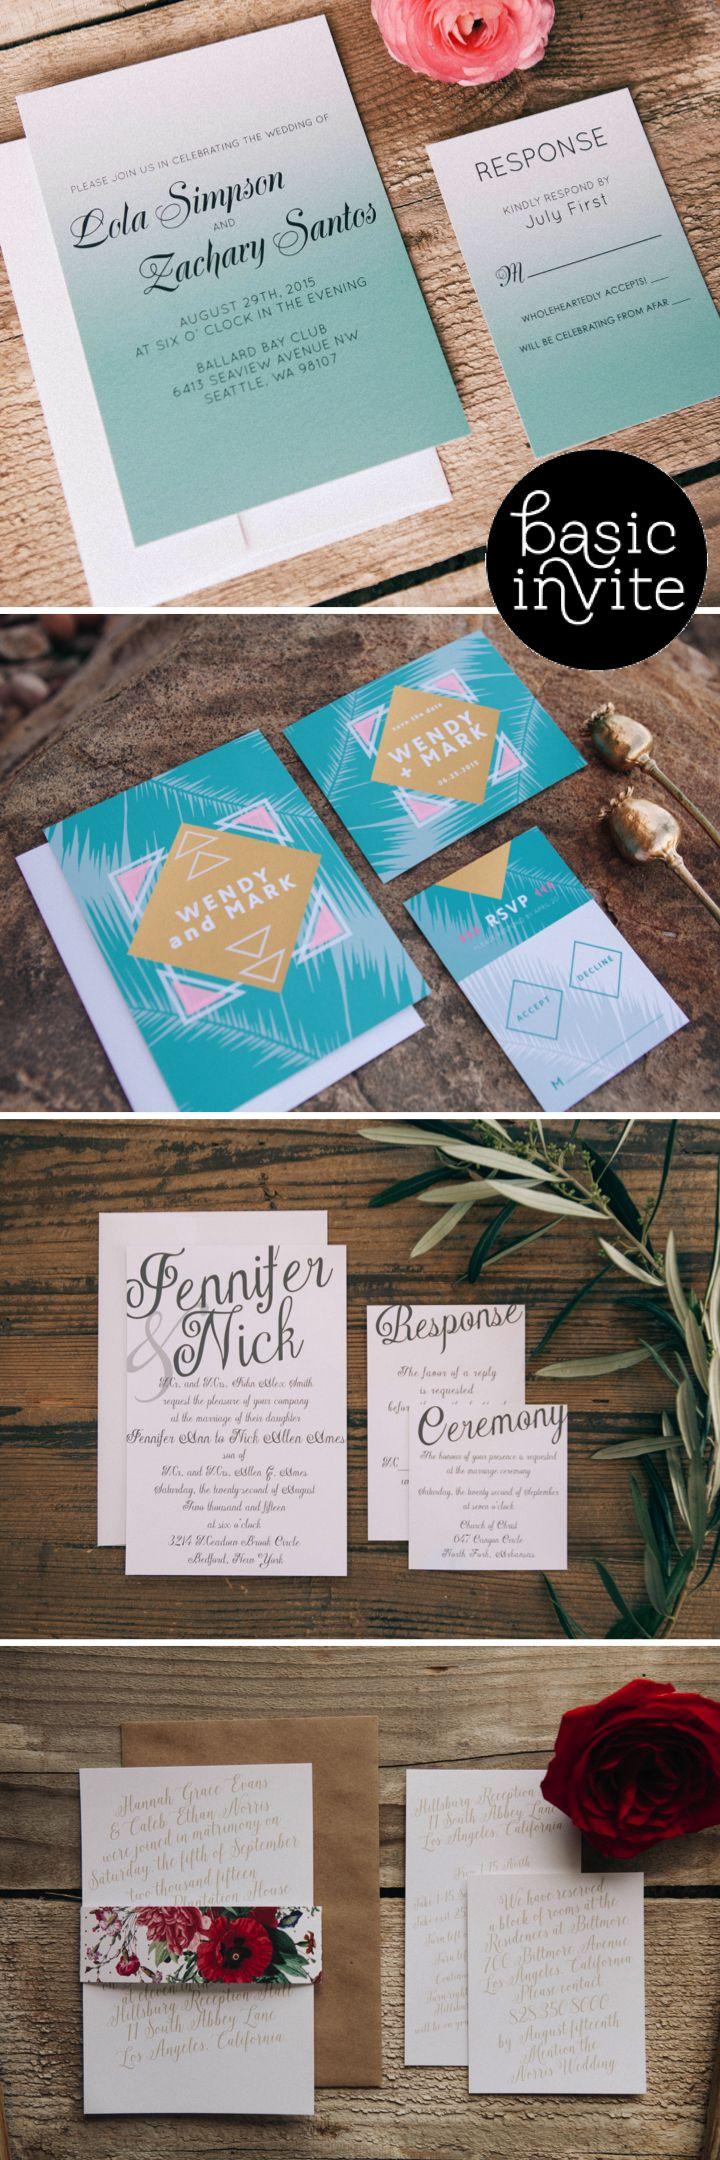 Wedding - Basic Invite - Stylish Stationery For Weddings!